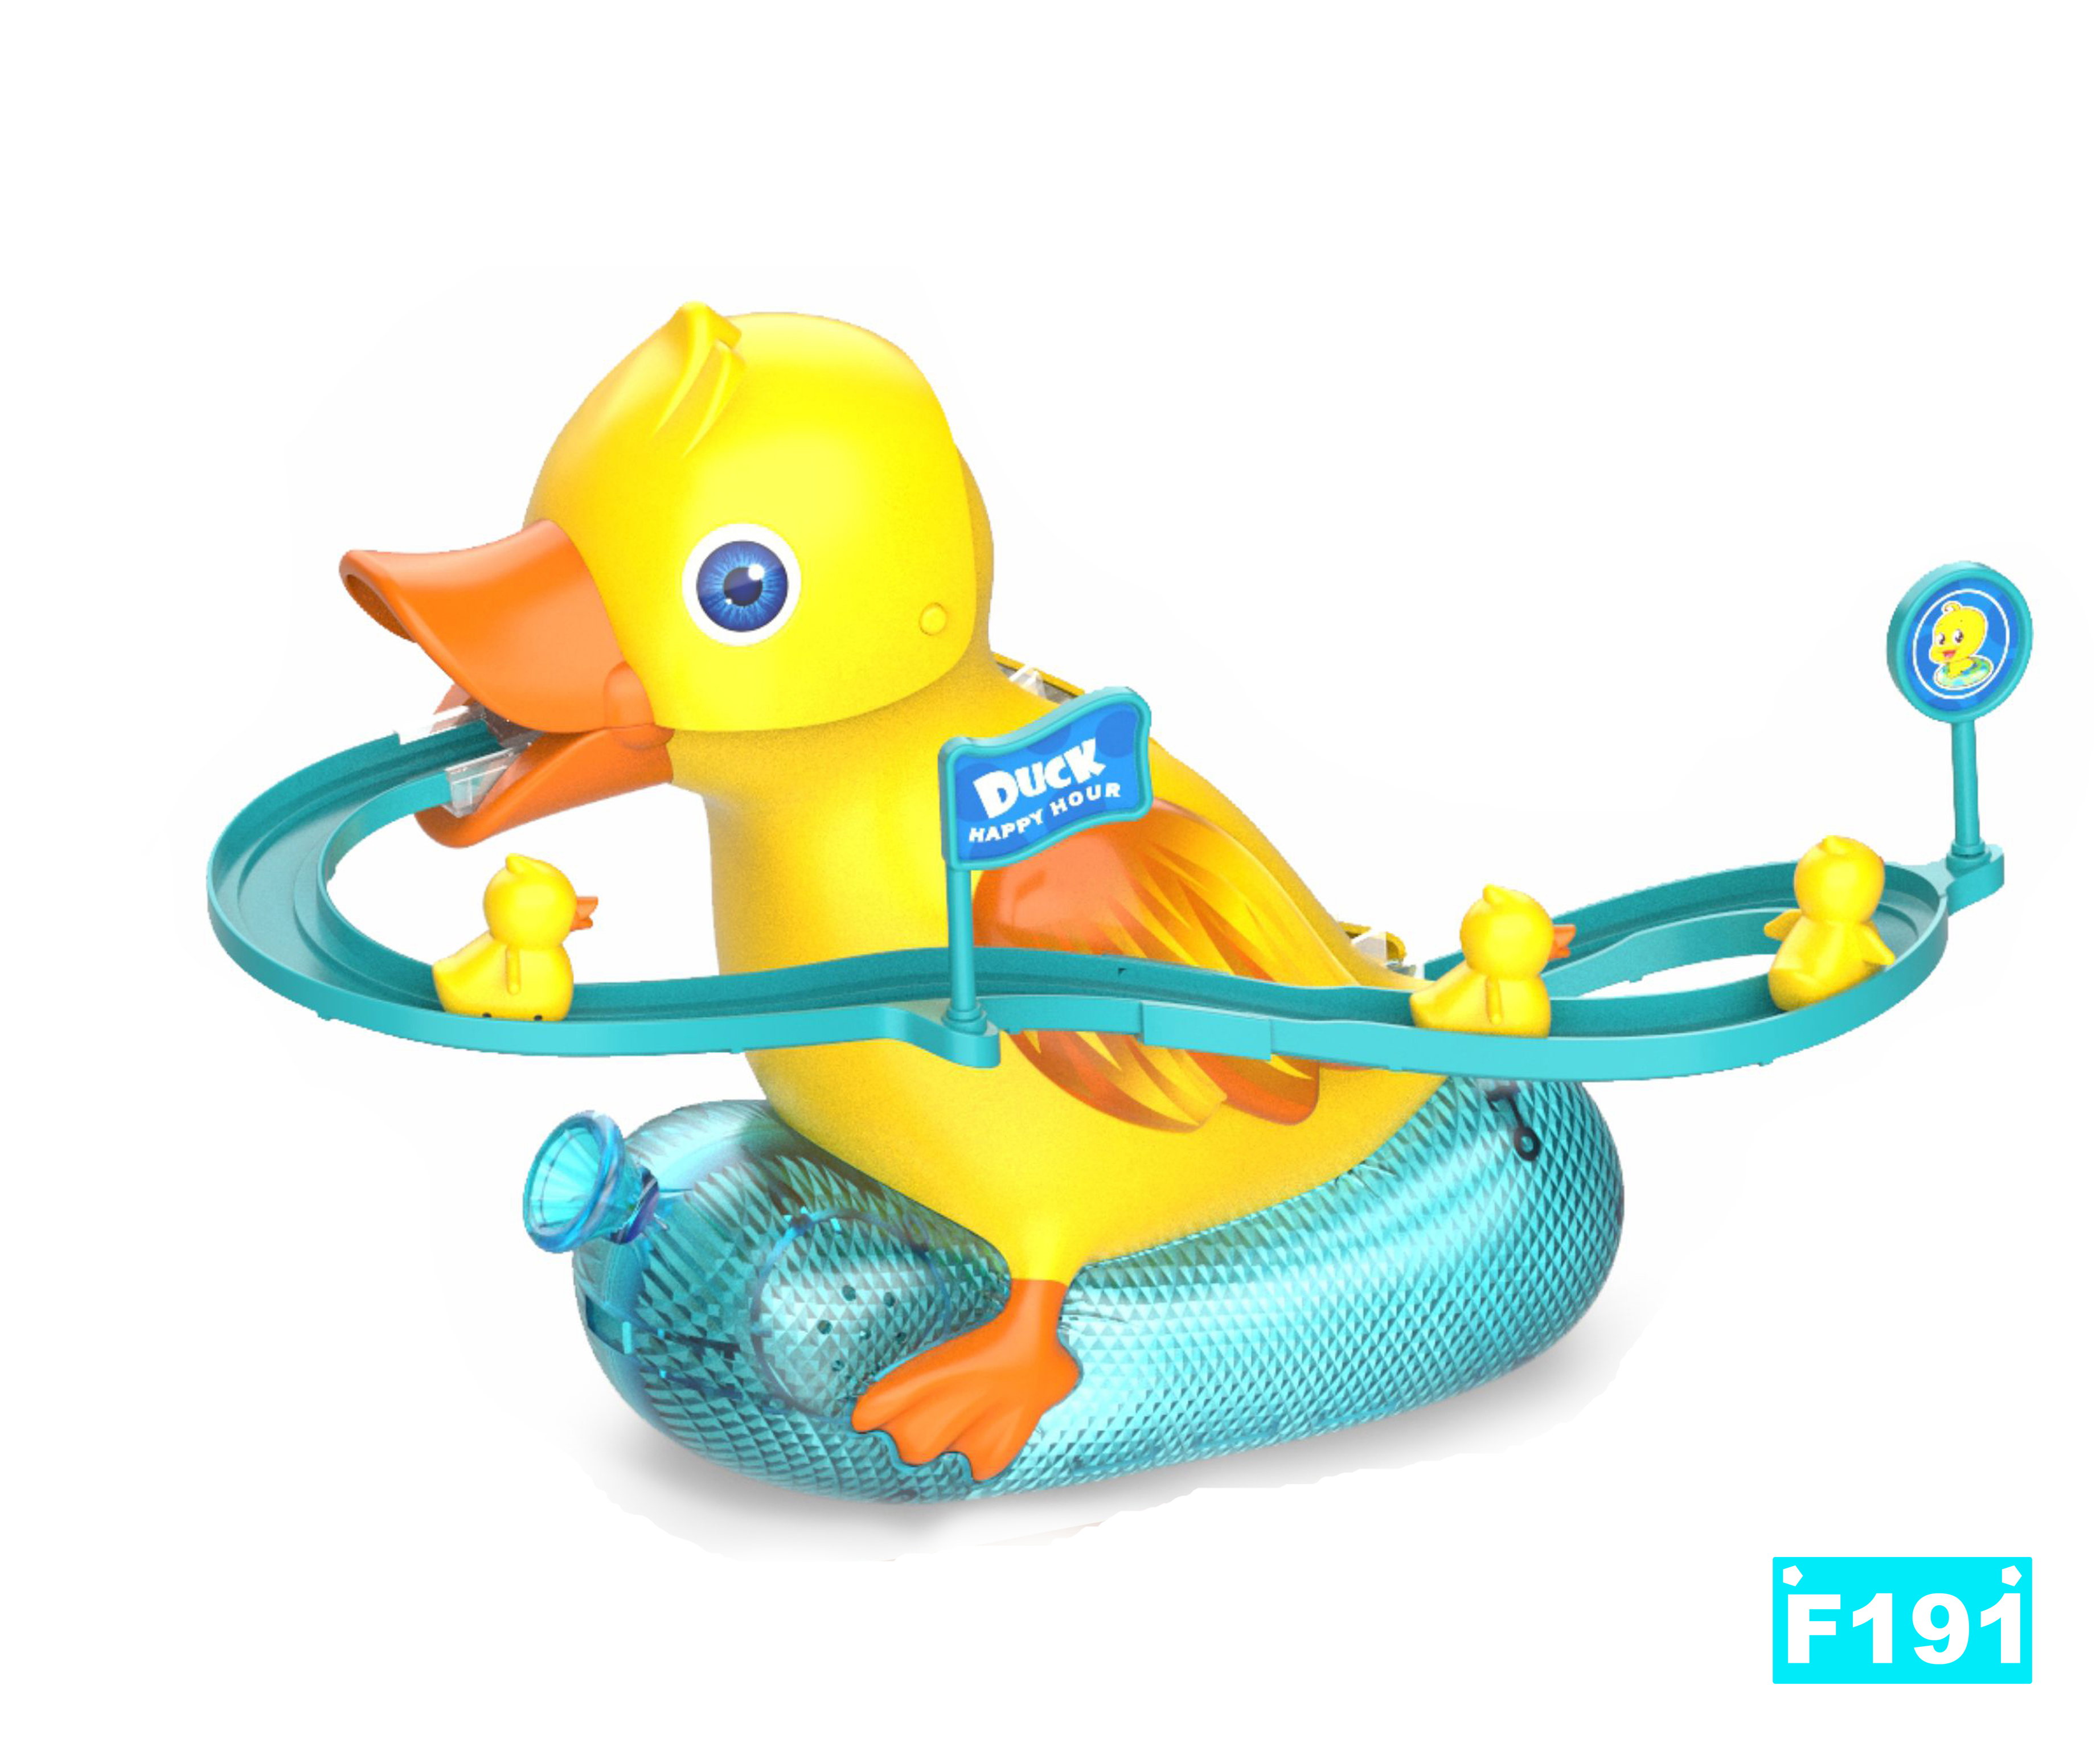 小鸭子爬楼梯 鸭子滑梯轨道玩具 外贸玩具 电动玩具 智能玩具 TOYS 小黄鸭玩具 JUGUETE产品图